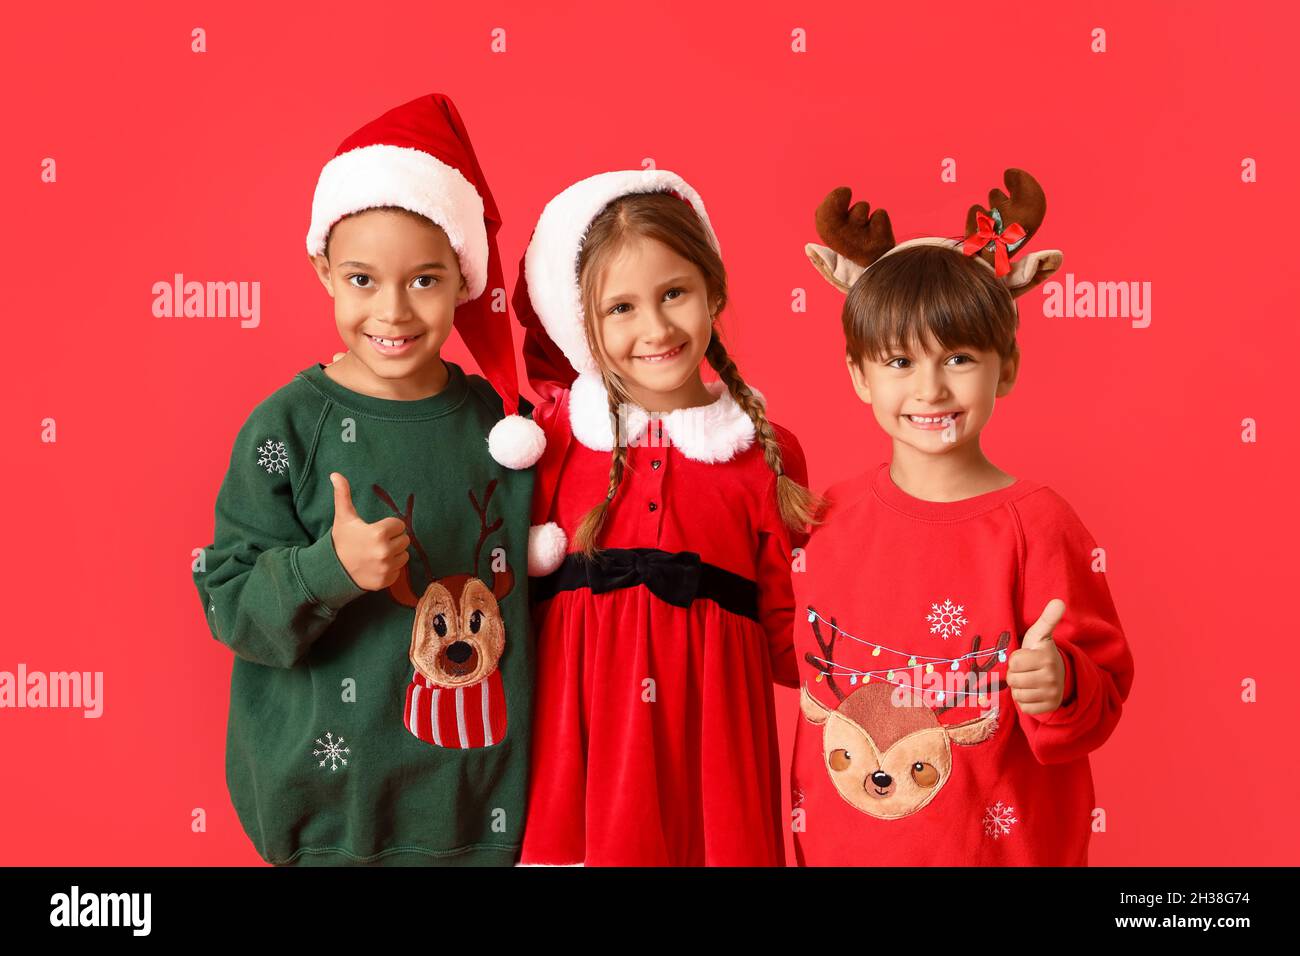 Kleine Kinder in Weihnachtskleidung auf rotem Hintergrund Stockfotografie -  Alamy